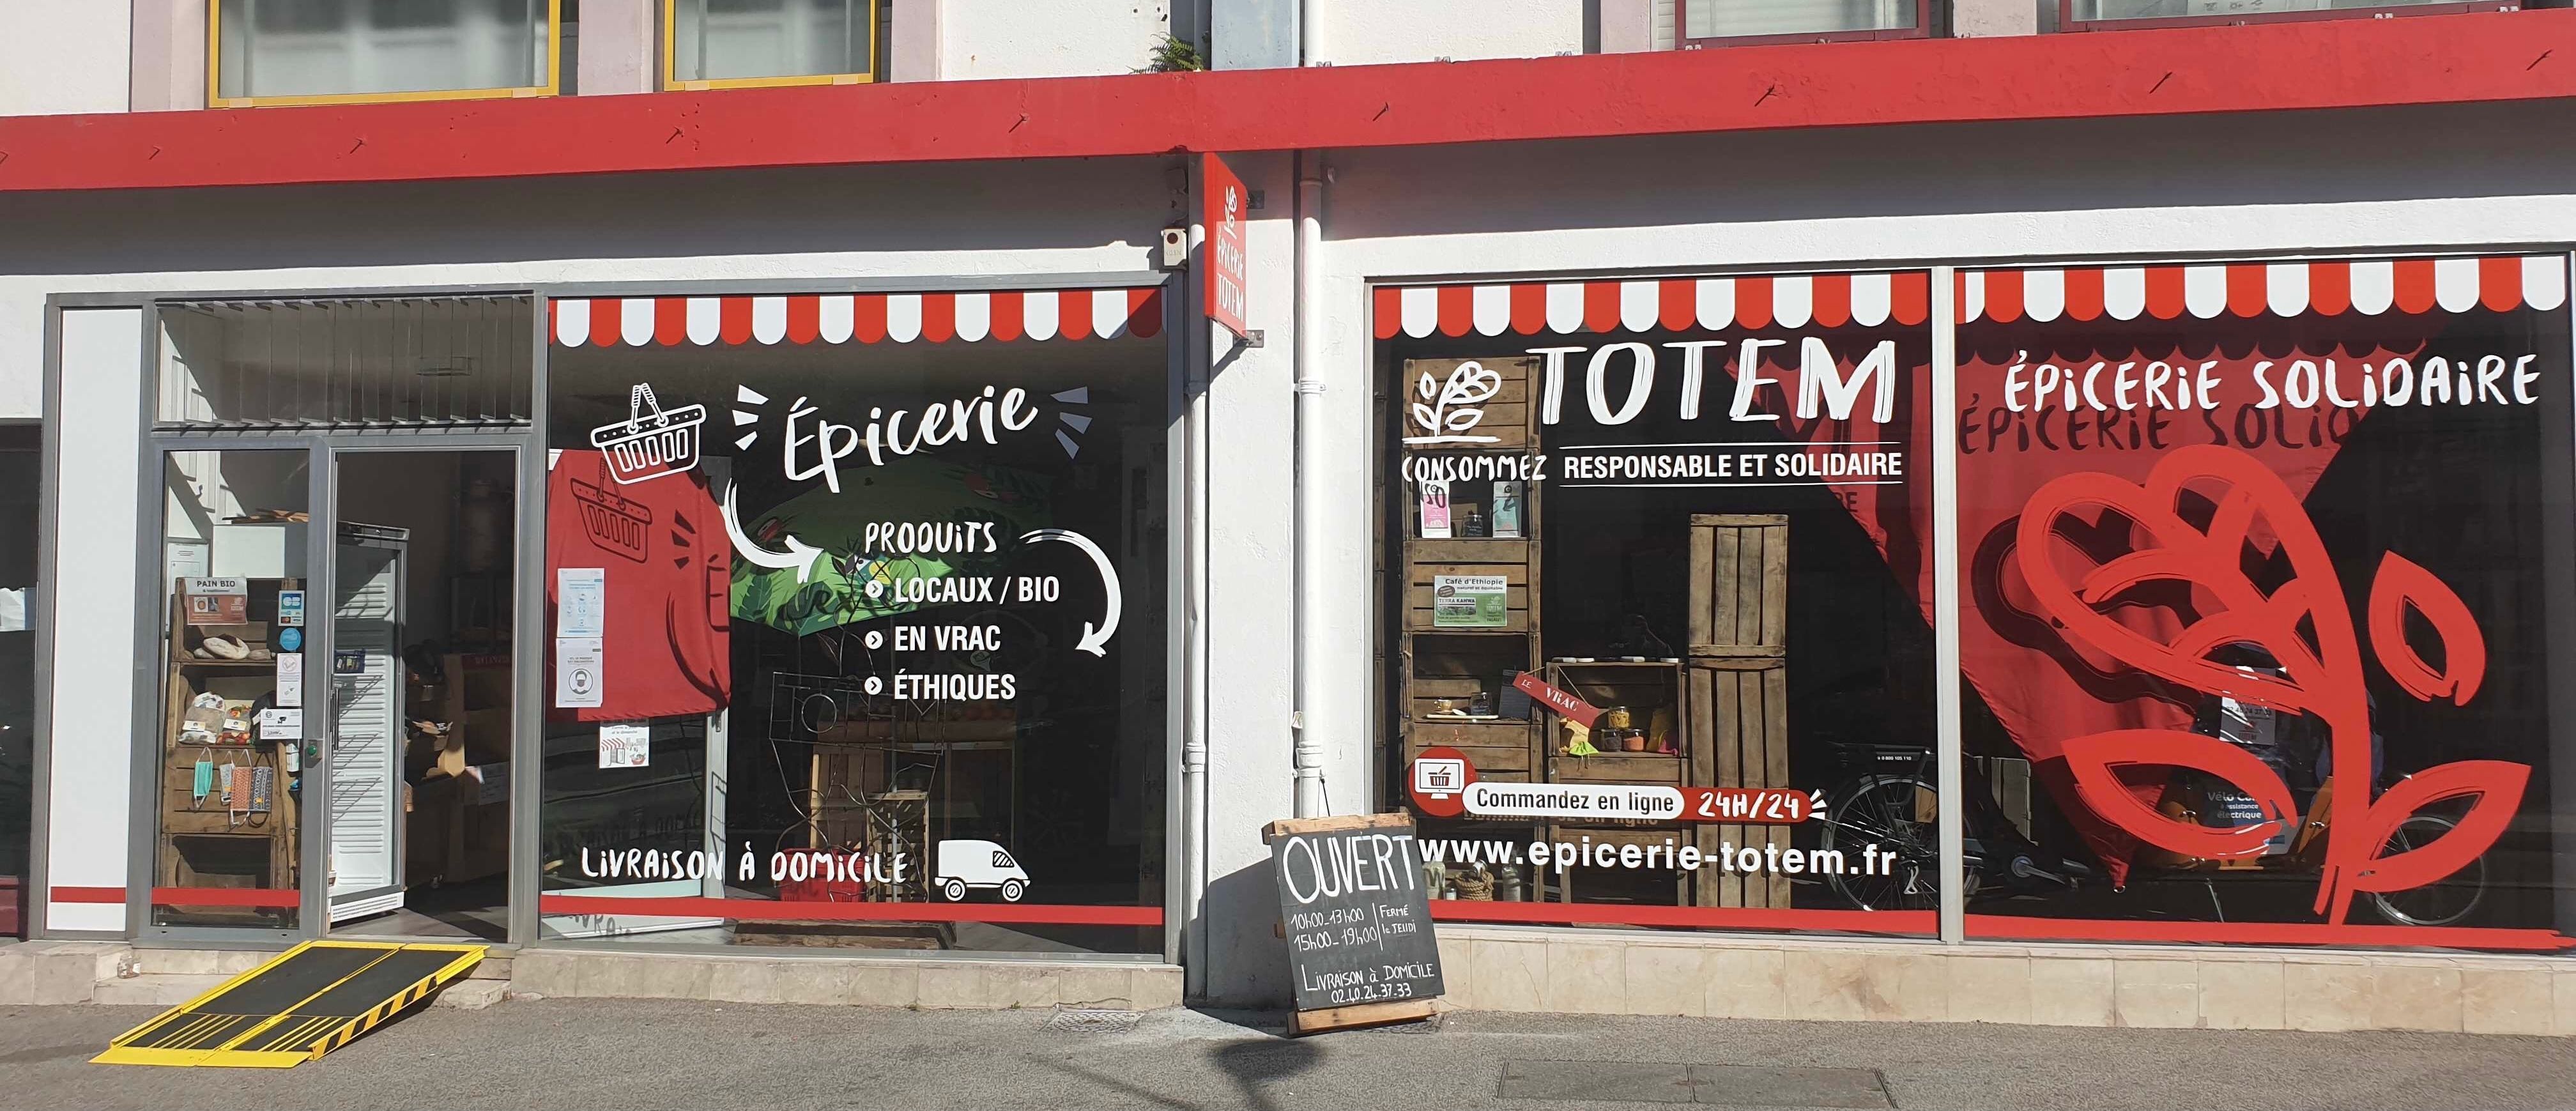 Association TOTEM. L'épicerie solidaire ouvre ses portes - Saint